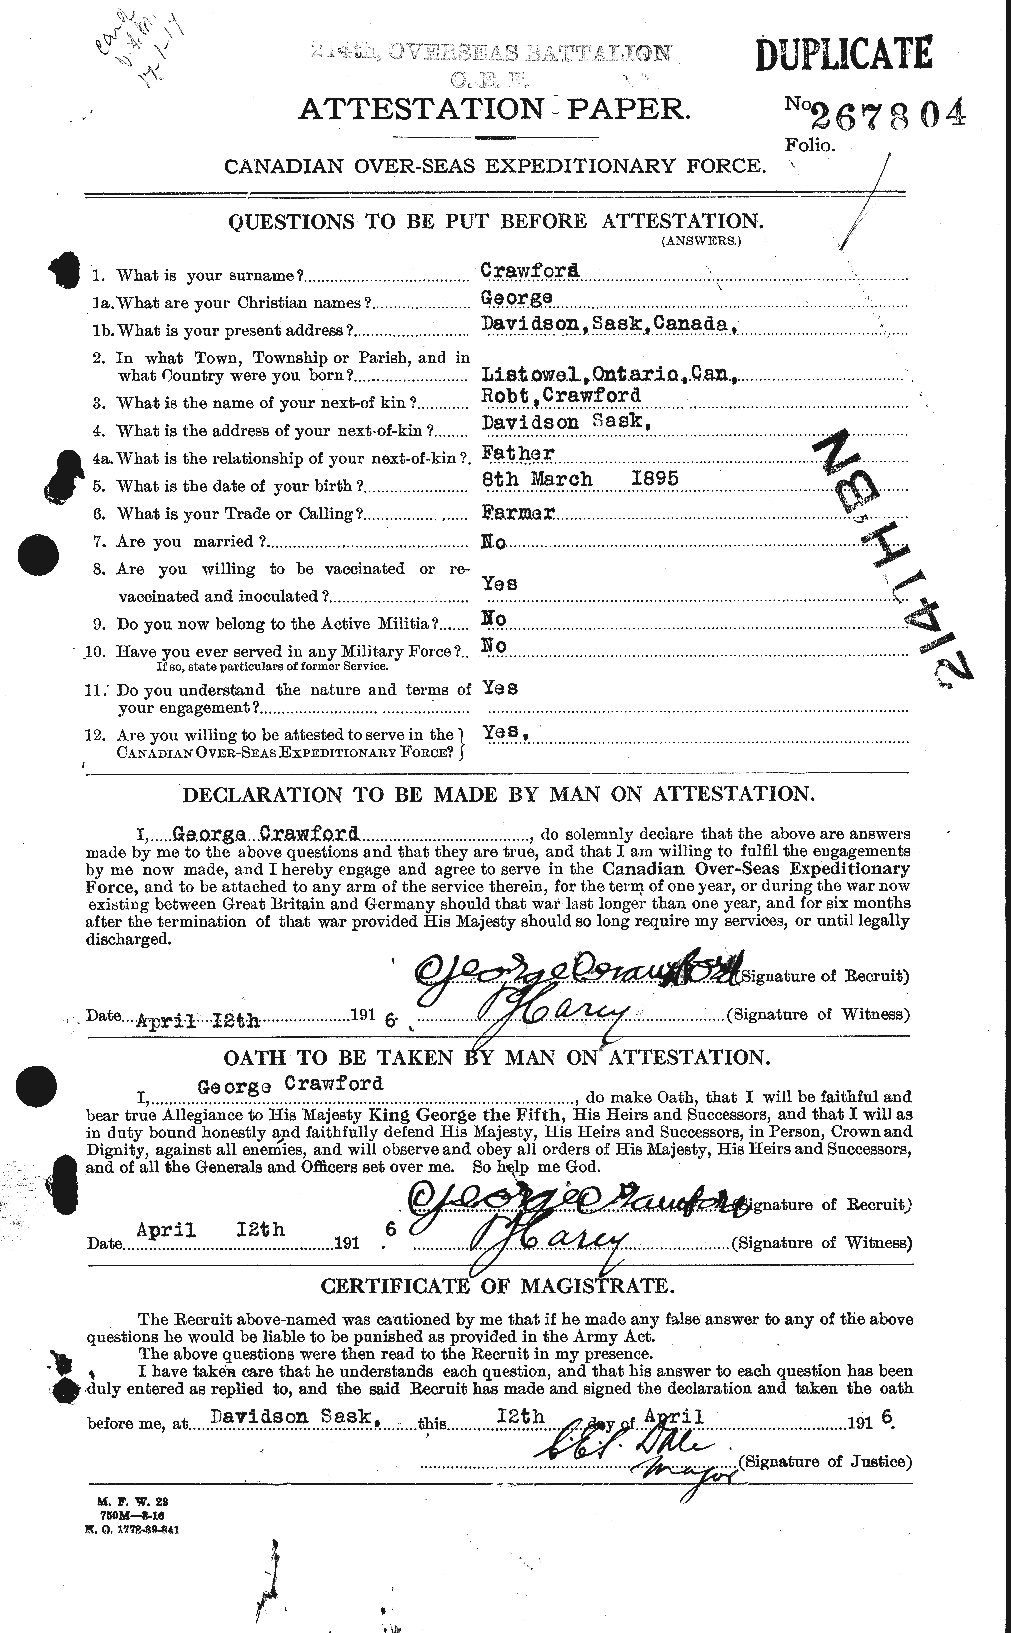 Dossiers du Personnel de la Première Guerre mondiale - CEC 060712a